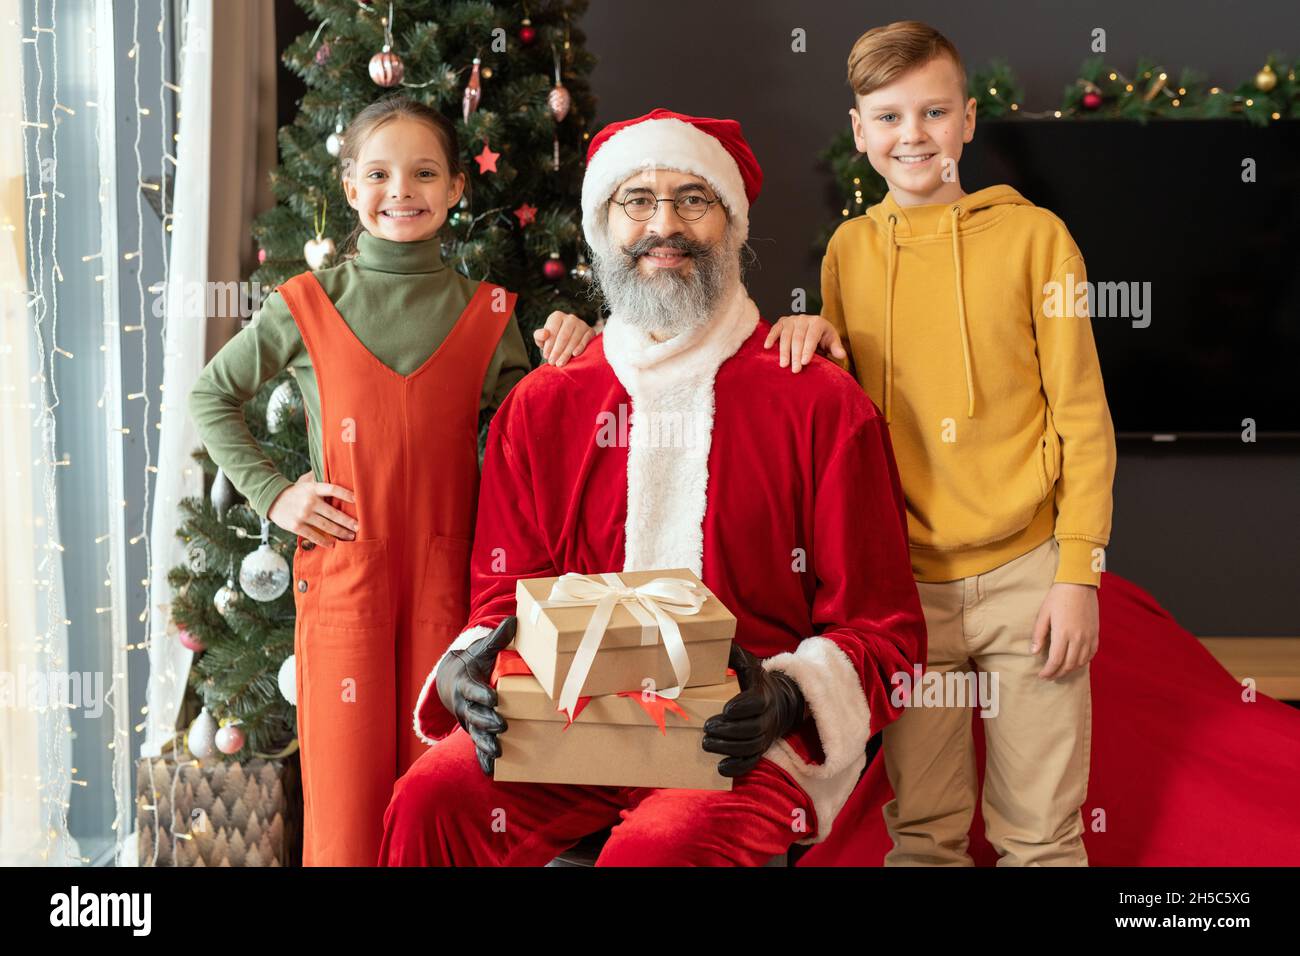 Portrait von lächelnden kaukasischen Kindern in hellen Outfits, die am Weihnachtsmann mit Weihnachtsgeschenken gegen geschmückten Baum im Wohnzimmer stehen Stockfoto